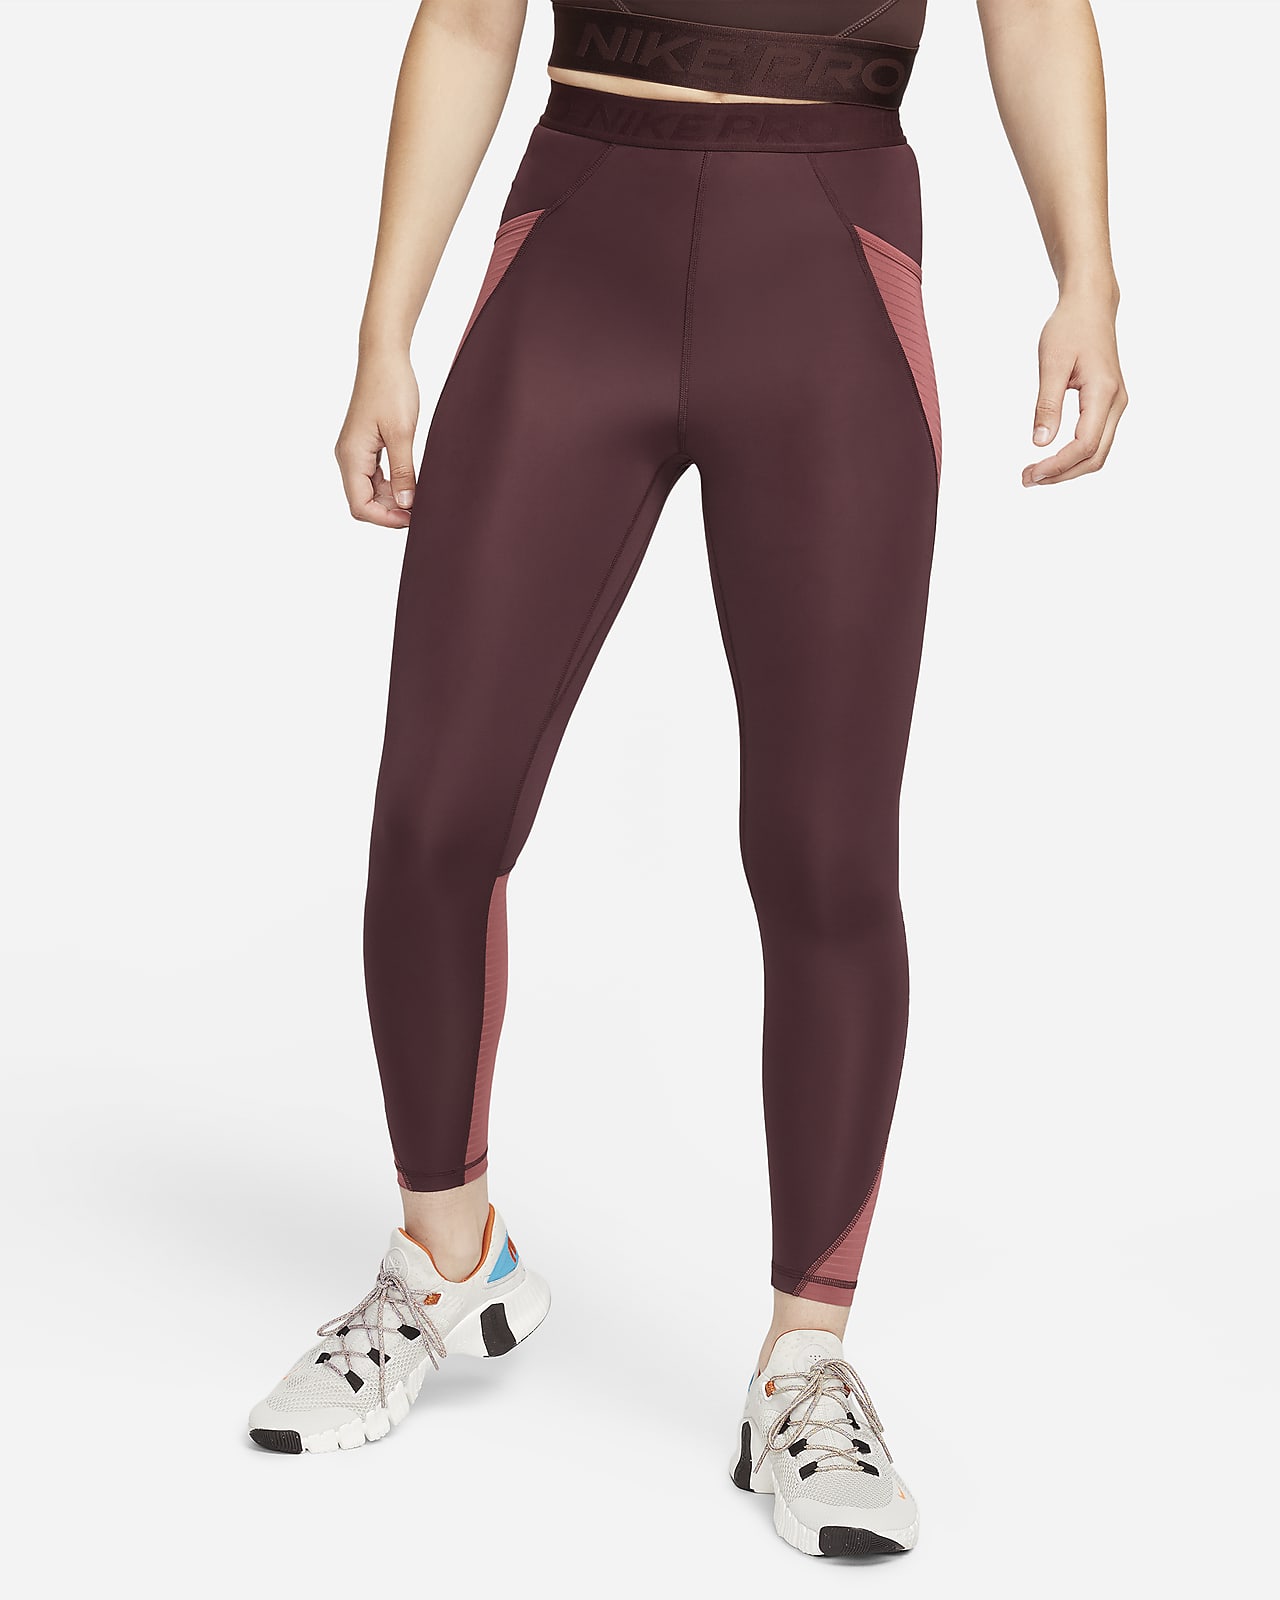 Tabla de tallas de leggings para mujer. Nike